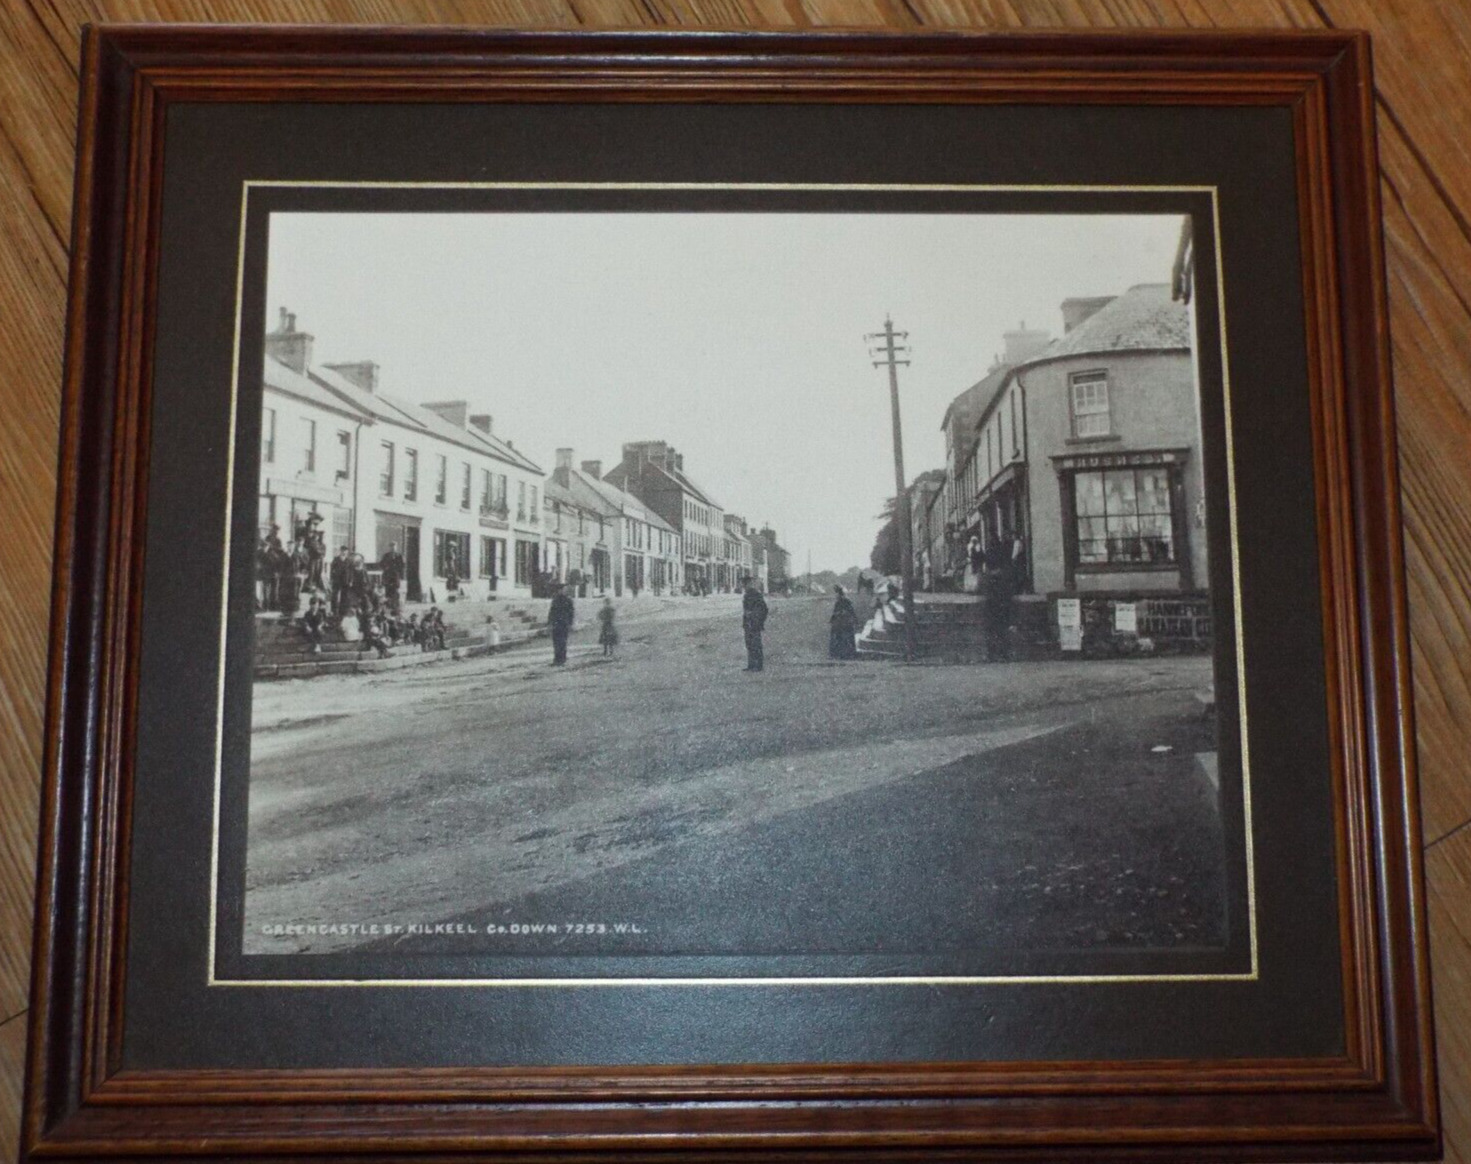 Framed Photo Greencastle Street Kilkeel Co Down 7253 W.L. Ireland 1907